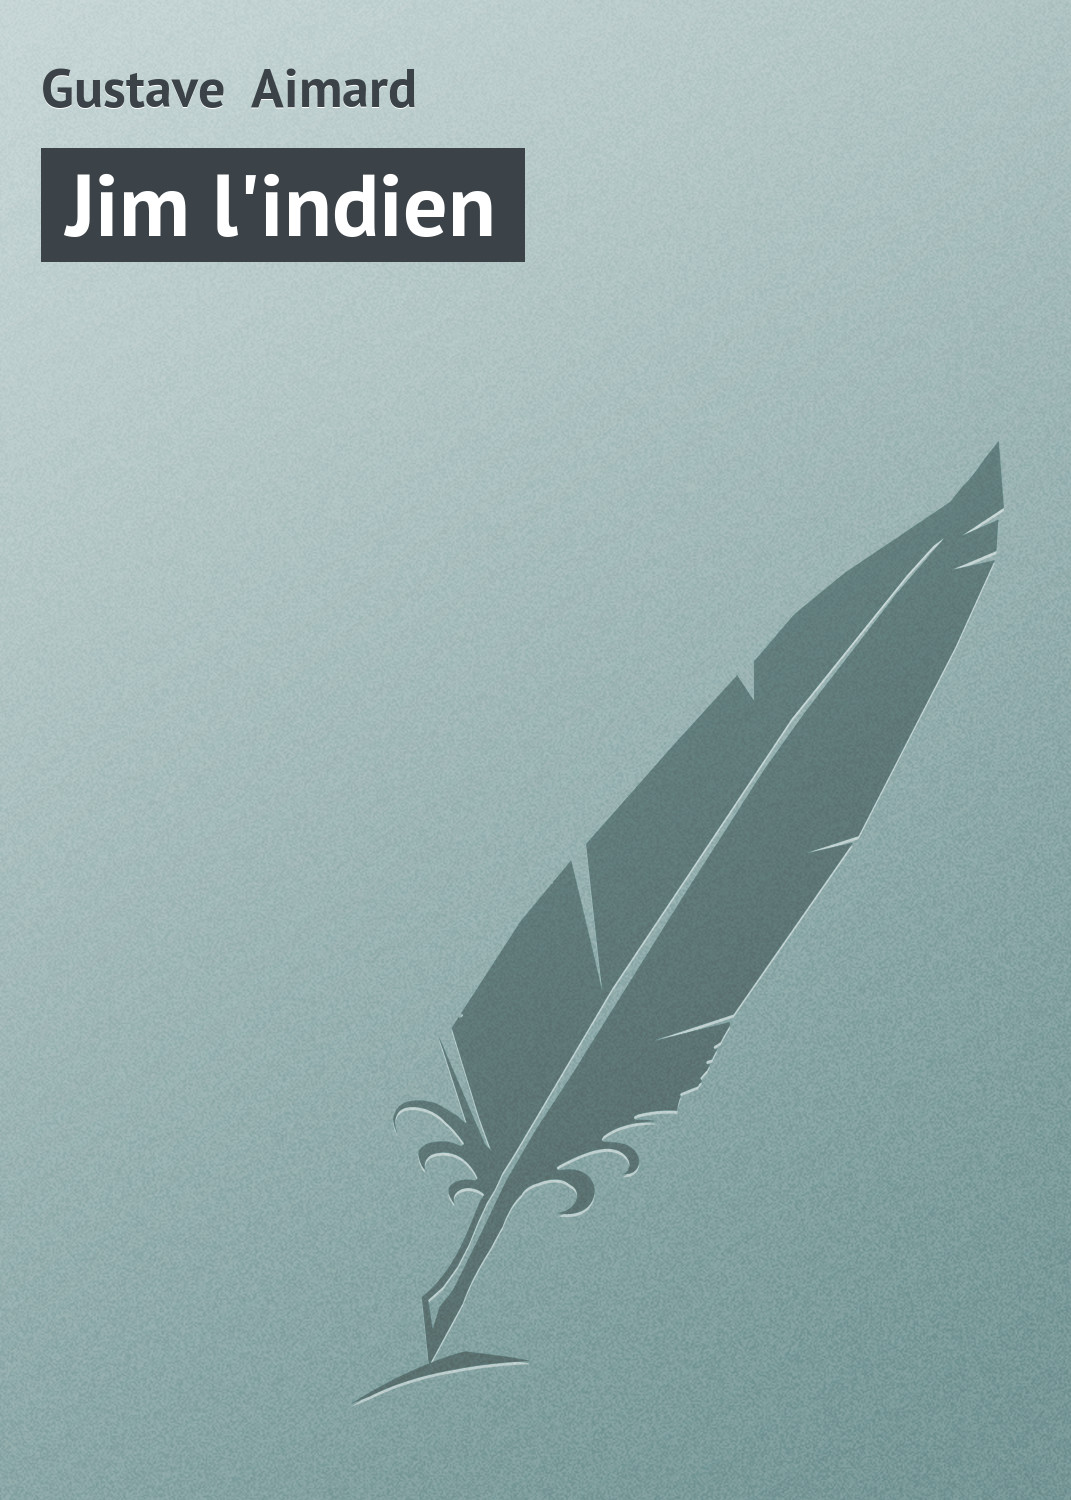 Книга Jim l'indien из серии , созданная Gustave Aimard, может относится к жанру Зарубежная старинная литература, Зарубежная классика. Стоимость электронной книги Jim l'indien с идентификатором 21104710 составляет 5.99 руб.